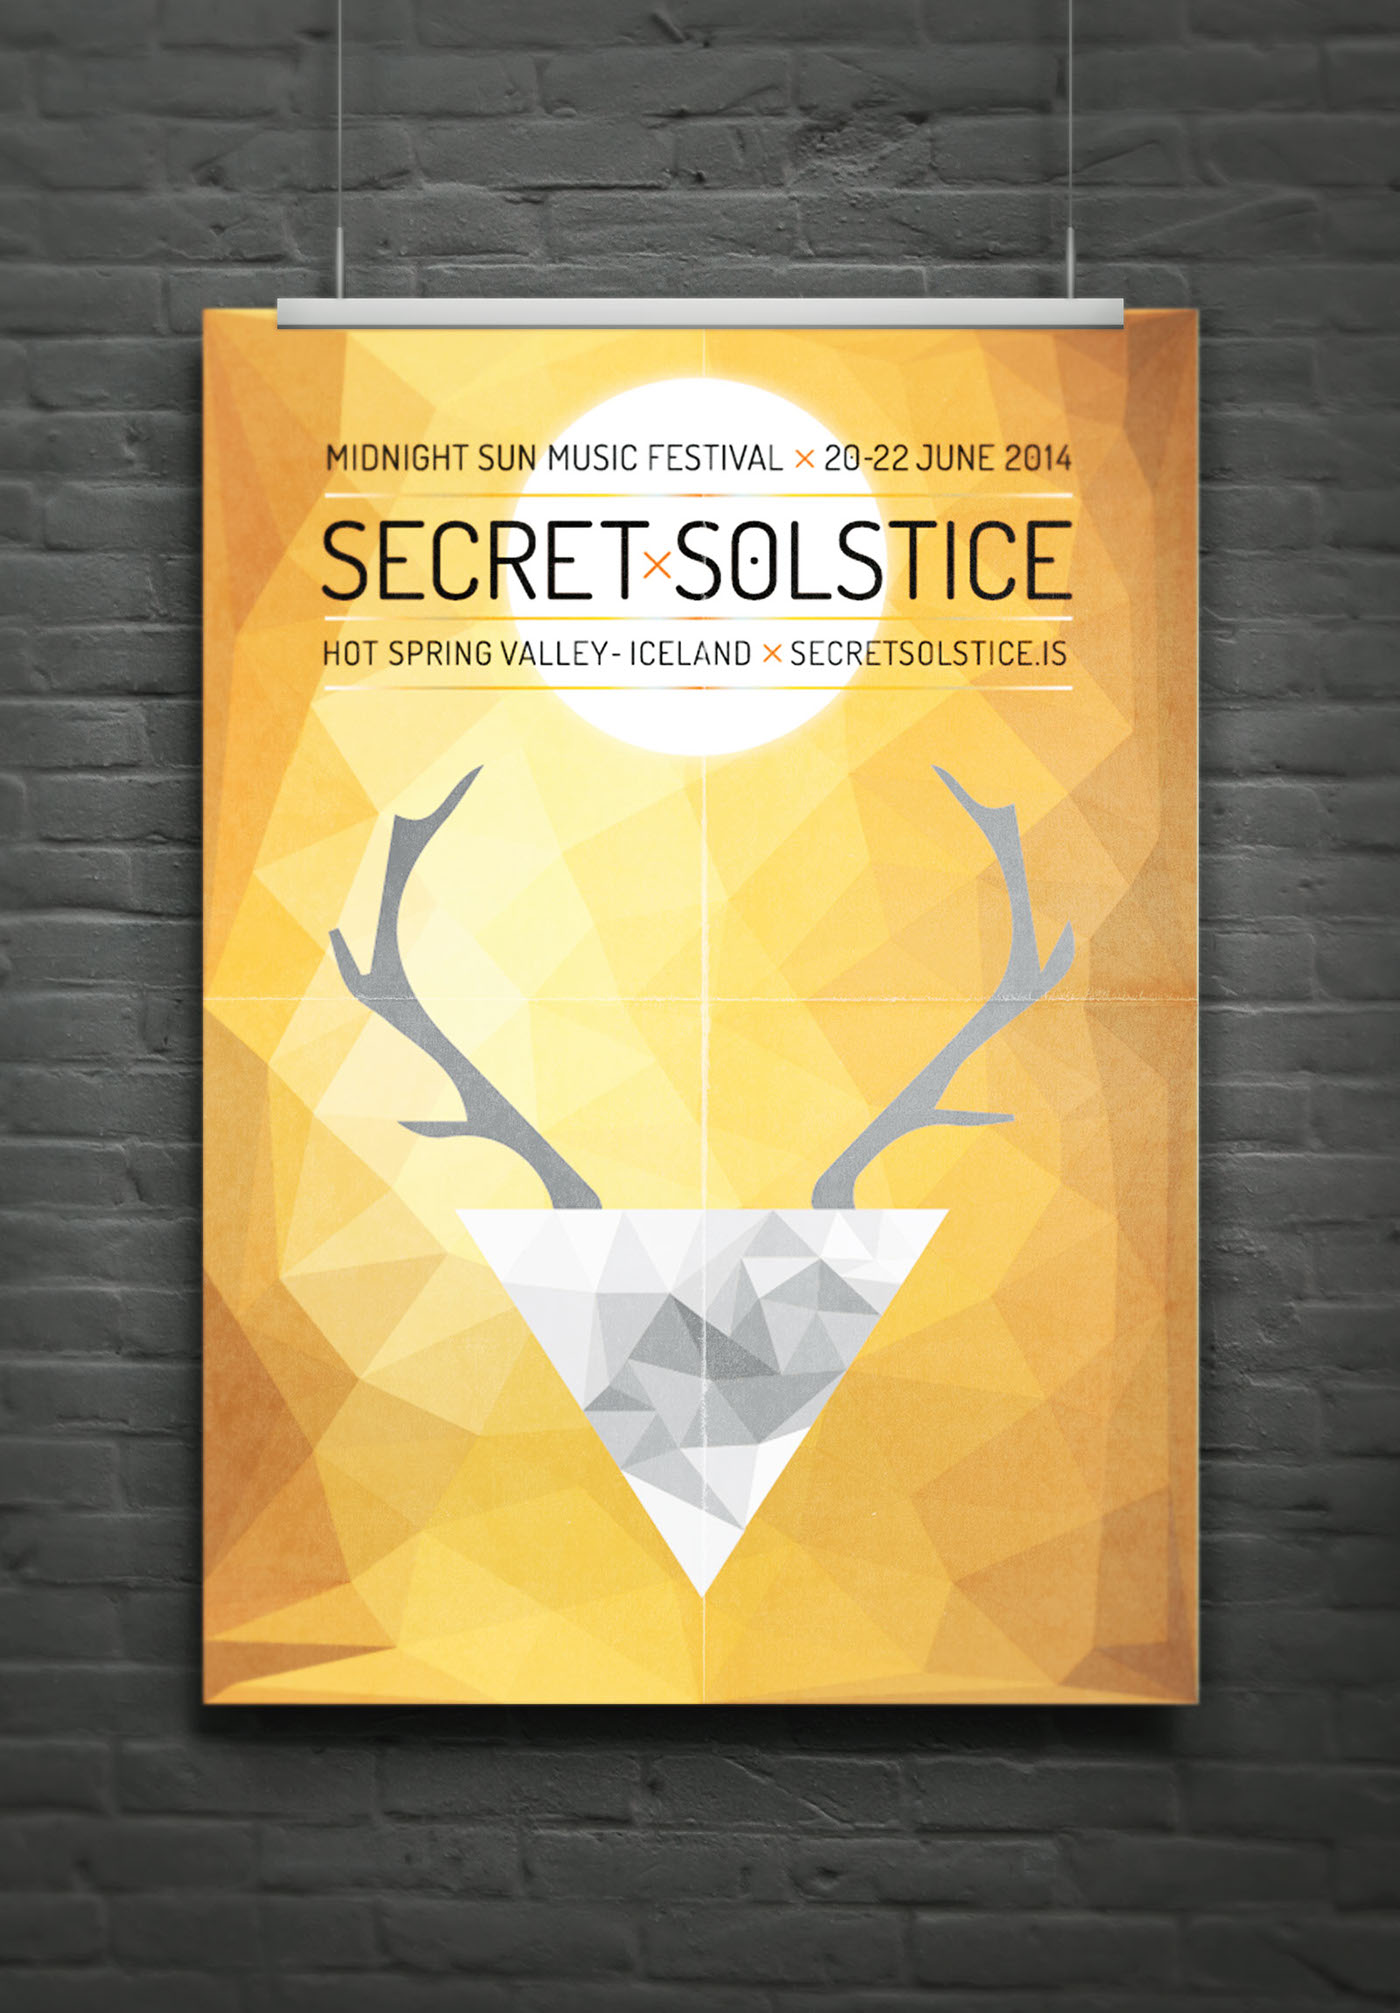 secret solstice festival tania lourenco Portimão poster design